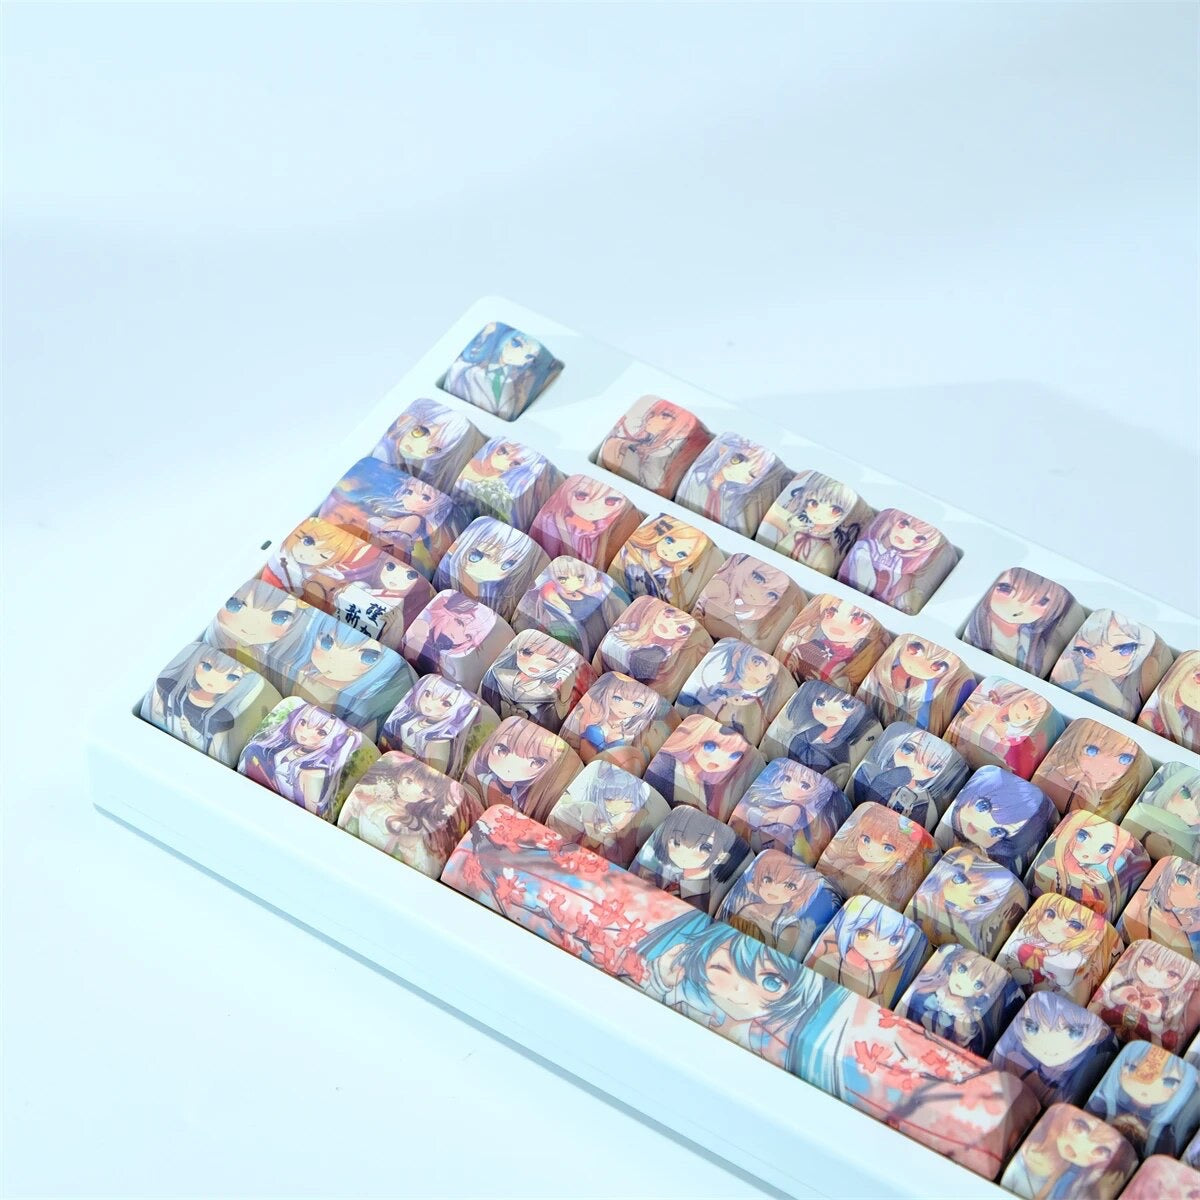 Keys | 126 Custom Keycaps | Anime Girl Theme | MOA Profile | Dye-Sublimation